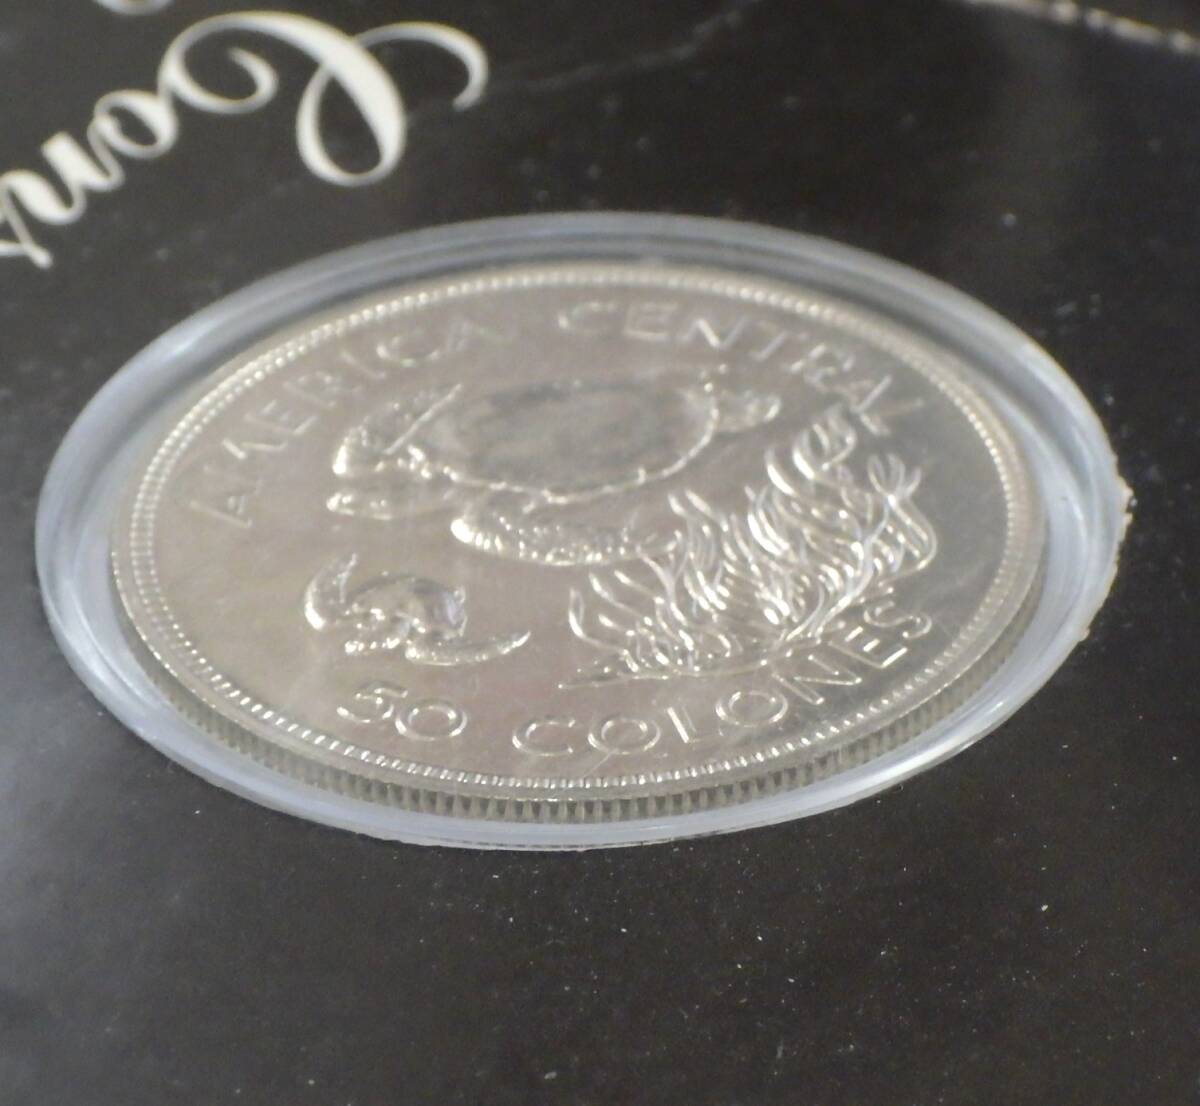 ◇コスタリカ 記念銀貨◇1974年 50 COLONES/50コロン銀貨 アオウミガメ  WWF 世界自然保護基金創立記念の画像8